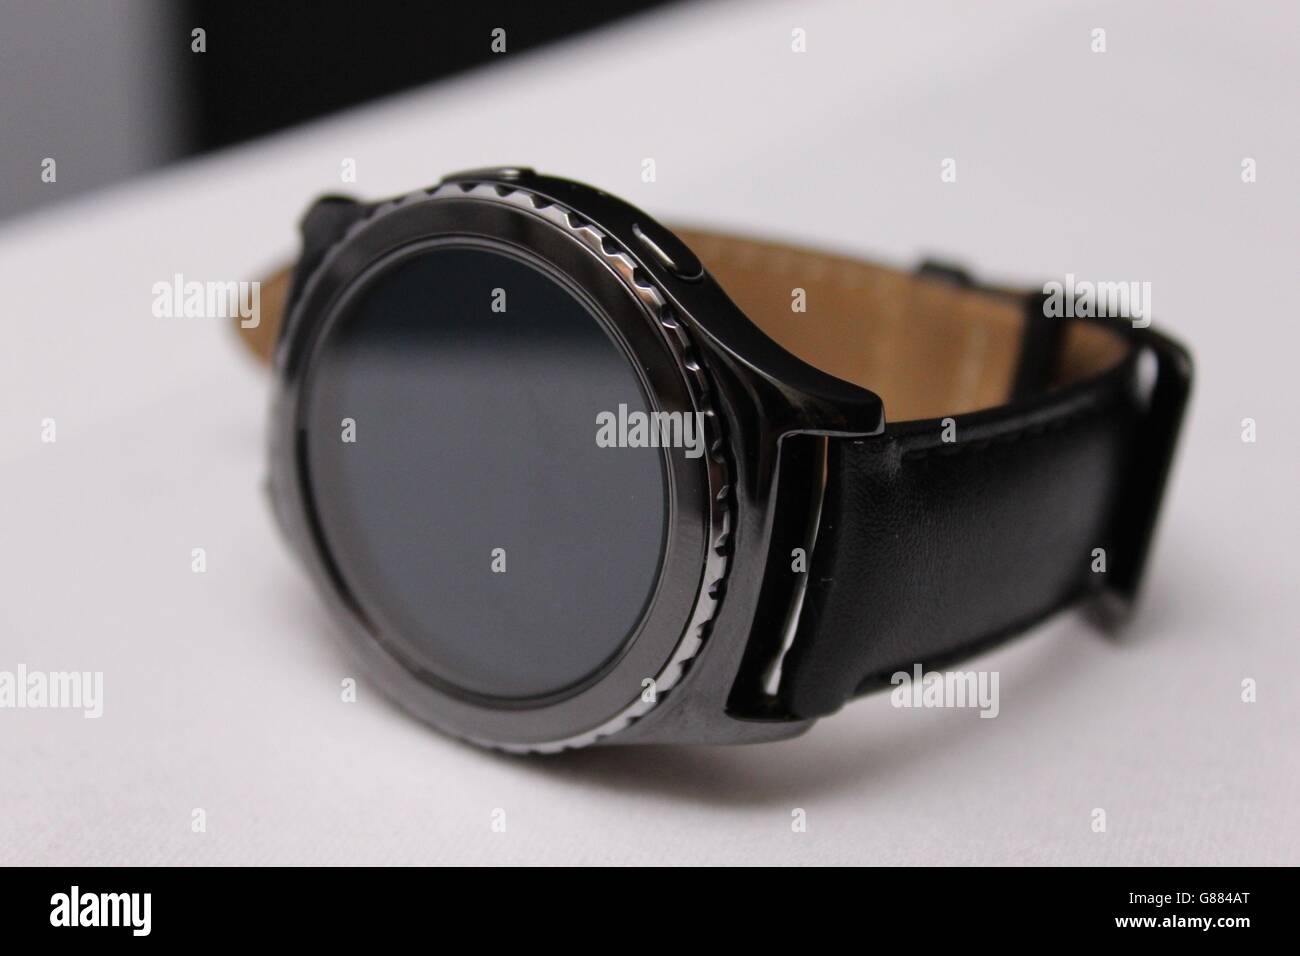 Lo smartwatch Samsung Gear S2 Classic ha la sua prima uscita al pubblico all'IFA electronics show di Berlino. Foto Stock